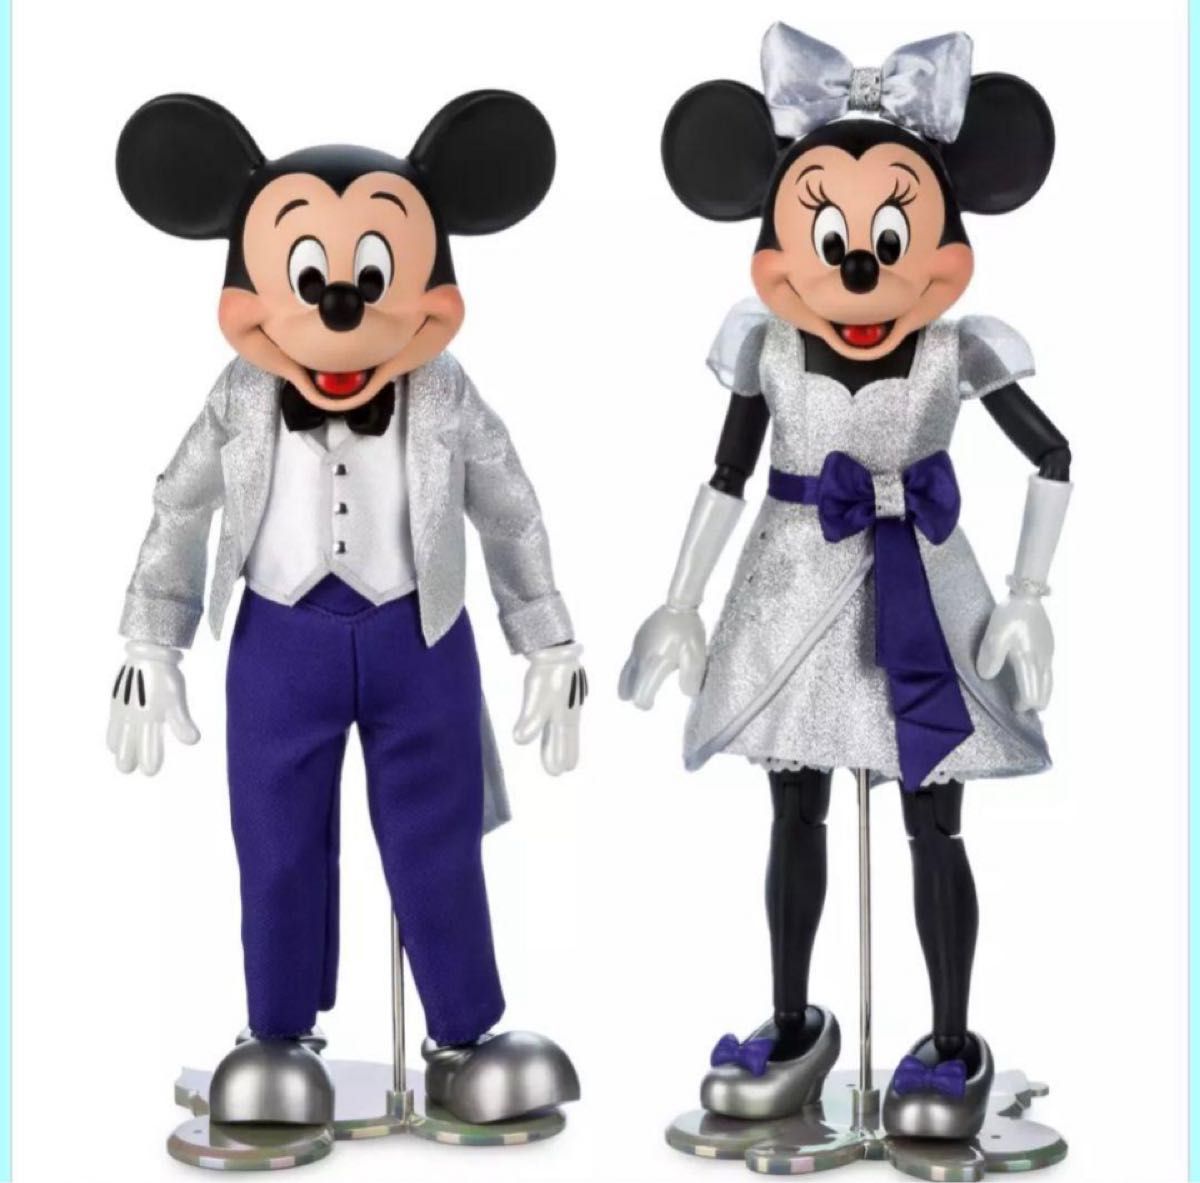 【激レア】ディズニー100 Disney100 ミッキー＆ミニー フィギュア ミッキーマウス ディズニー フィギュア コレクション